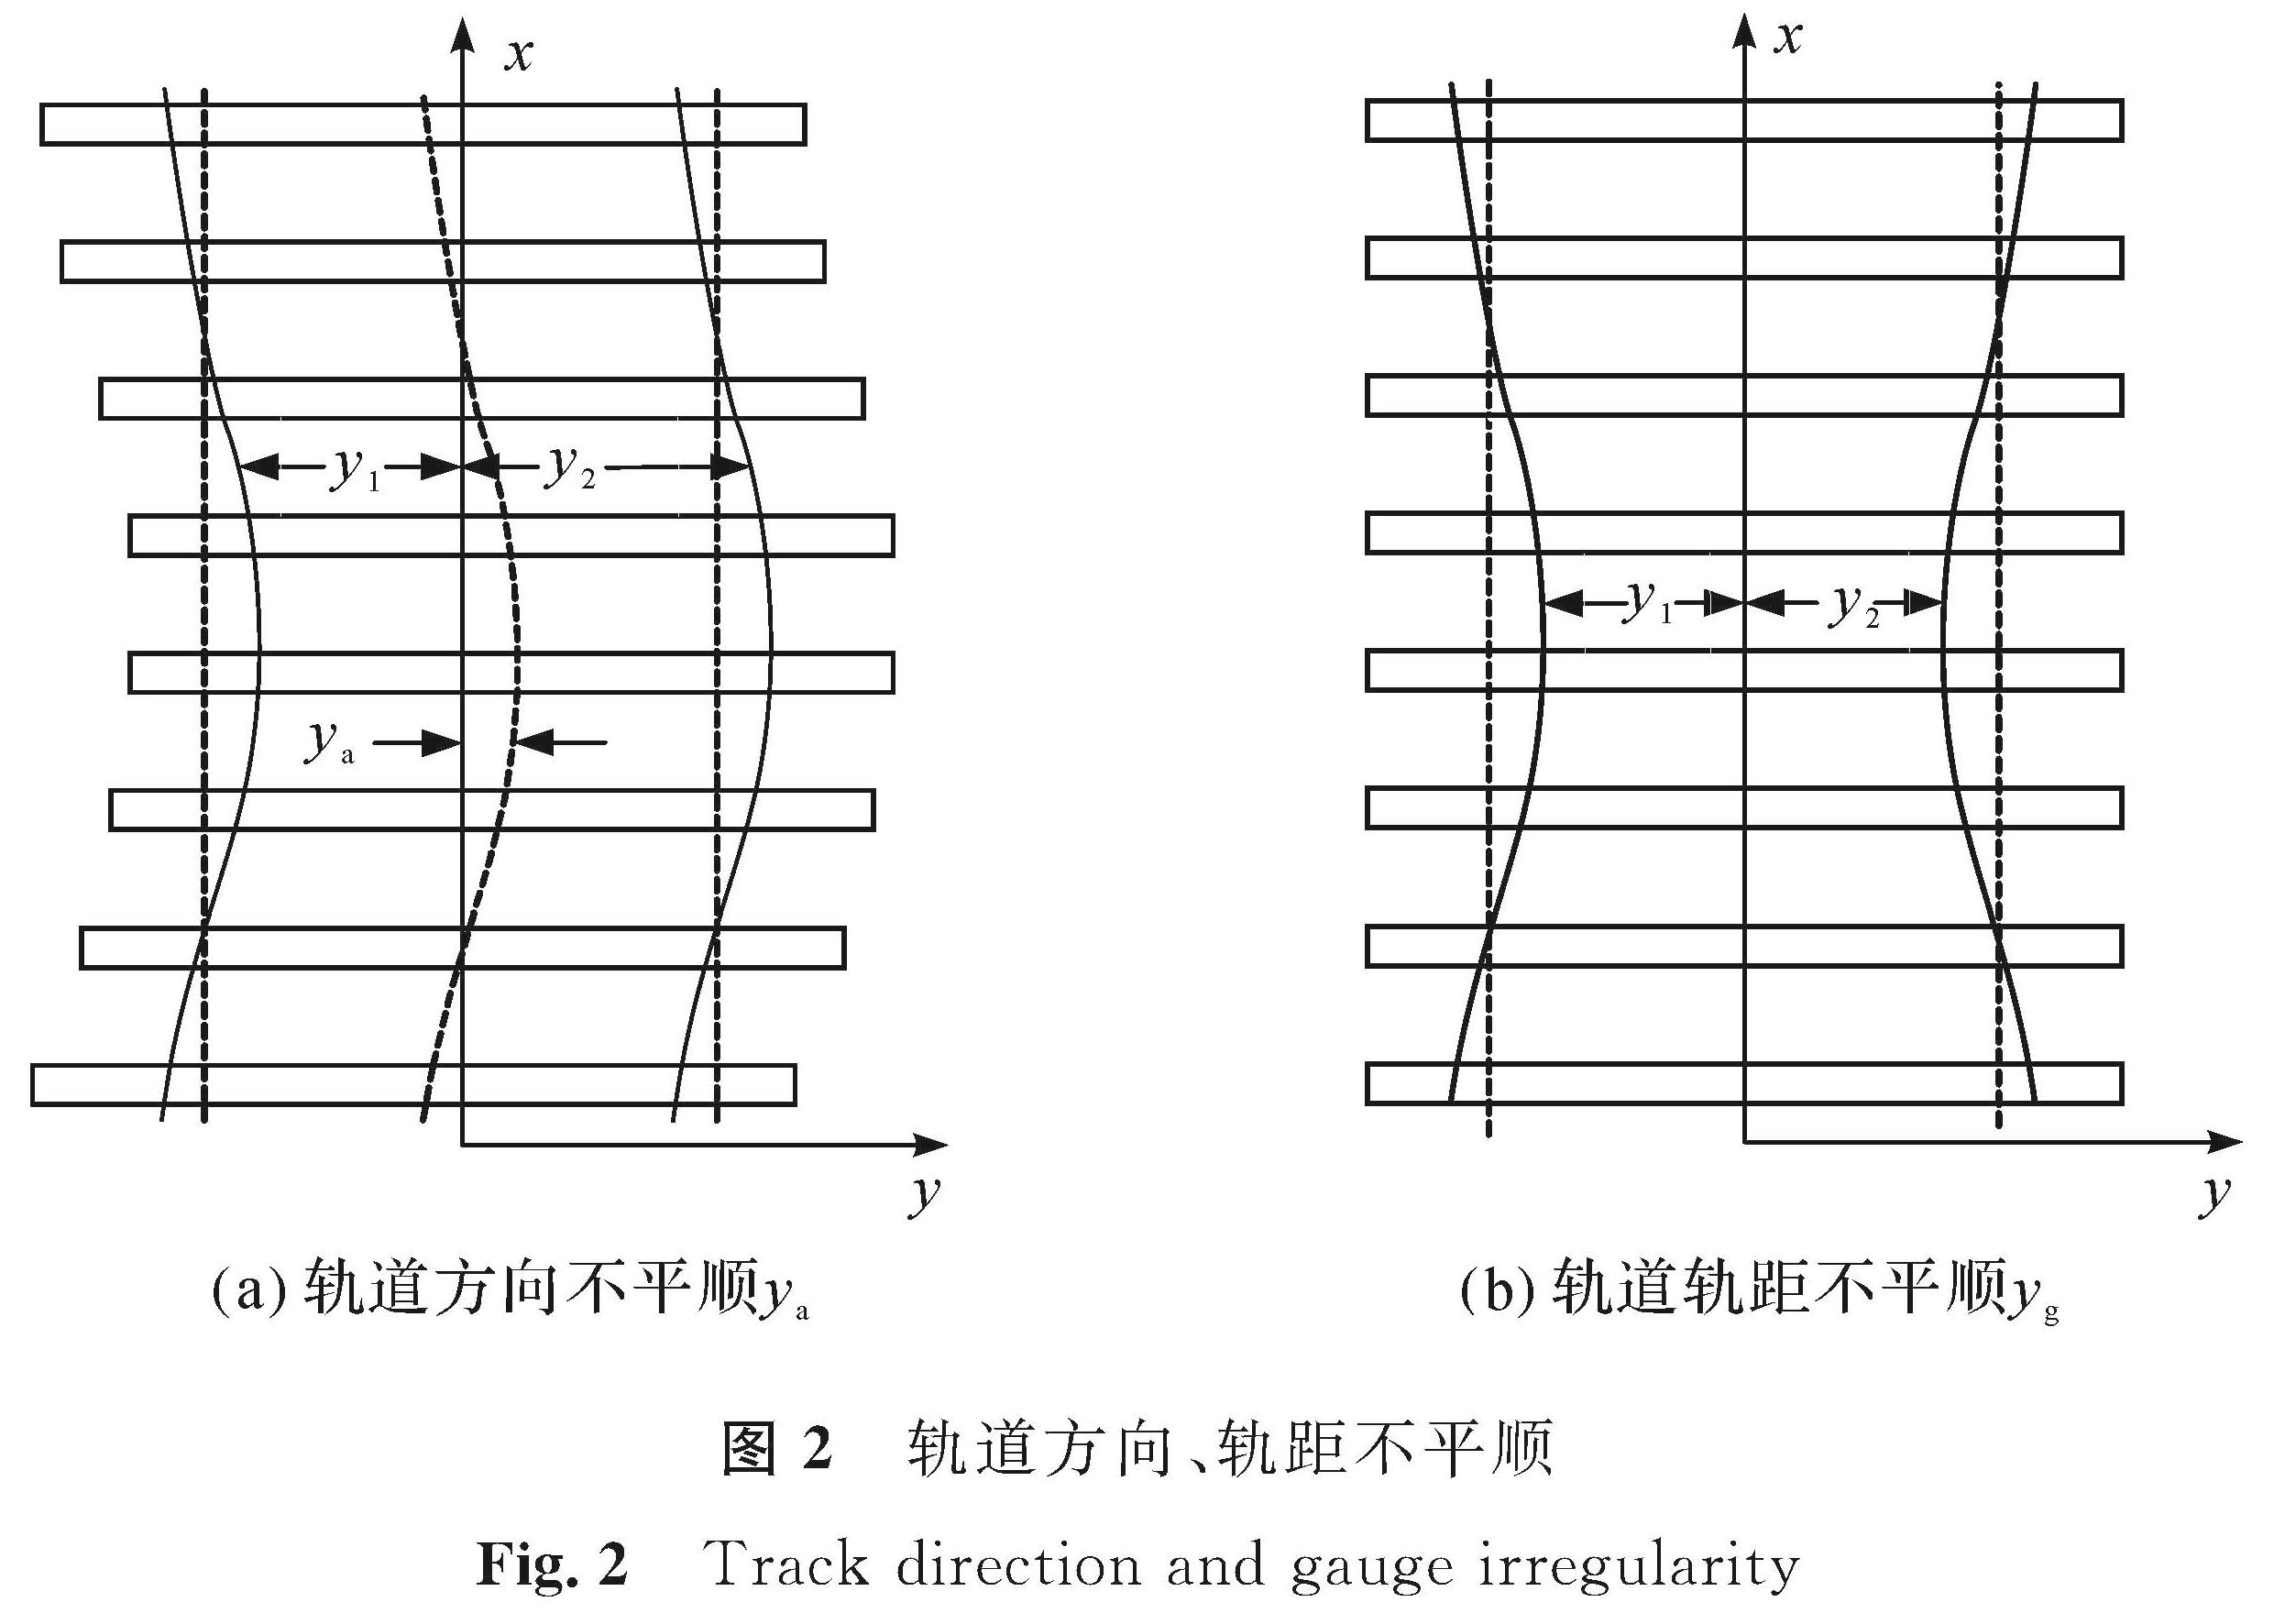 图2 轨道方向、轨距不平顺<br/>Fig.2 Track direction and gauge irregularity